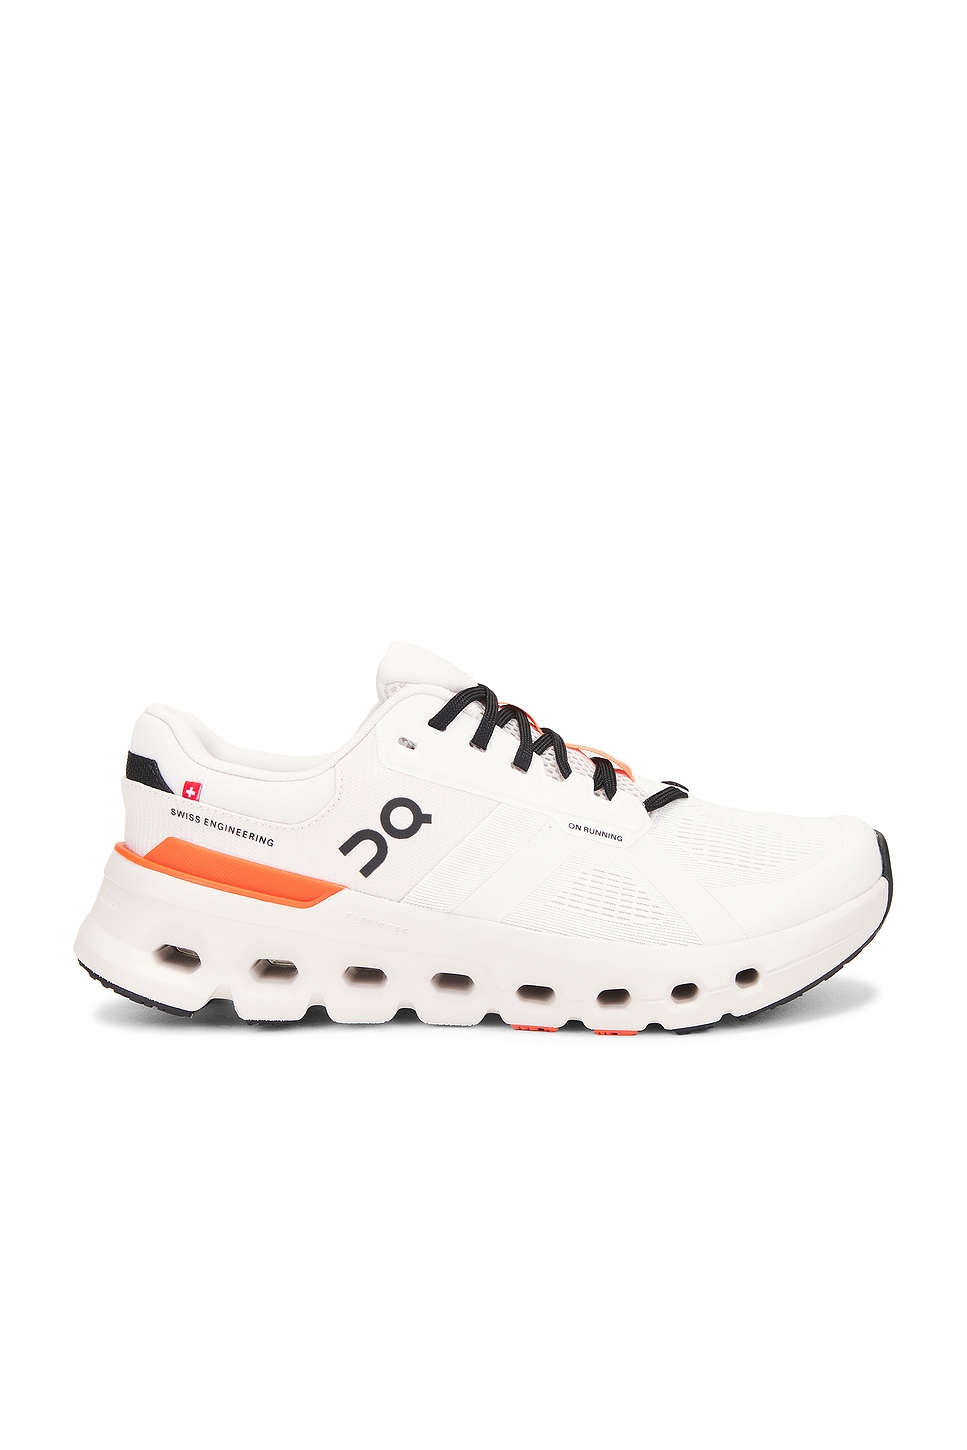 Cloudrunner 2 Sneaker in White